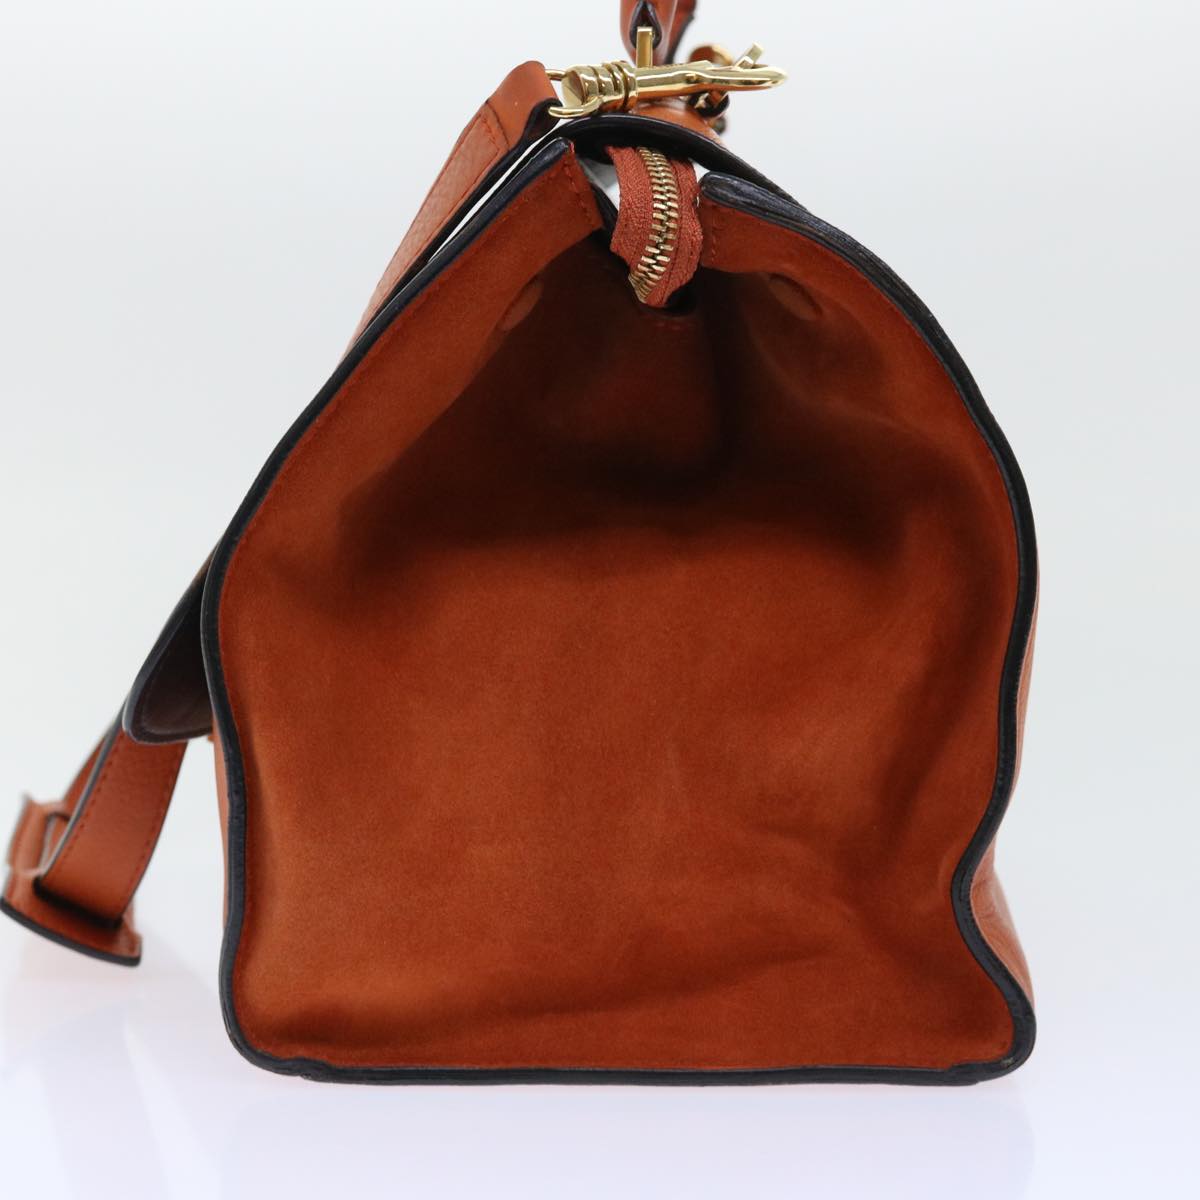 CELINE Shoulder Bag Leather 2way Orange Auth bs7869